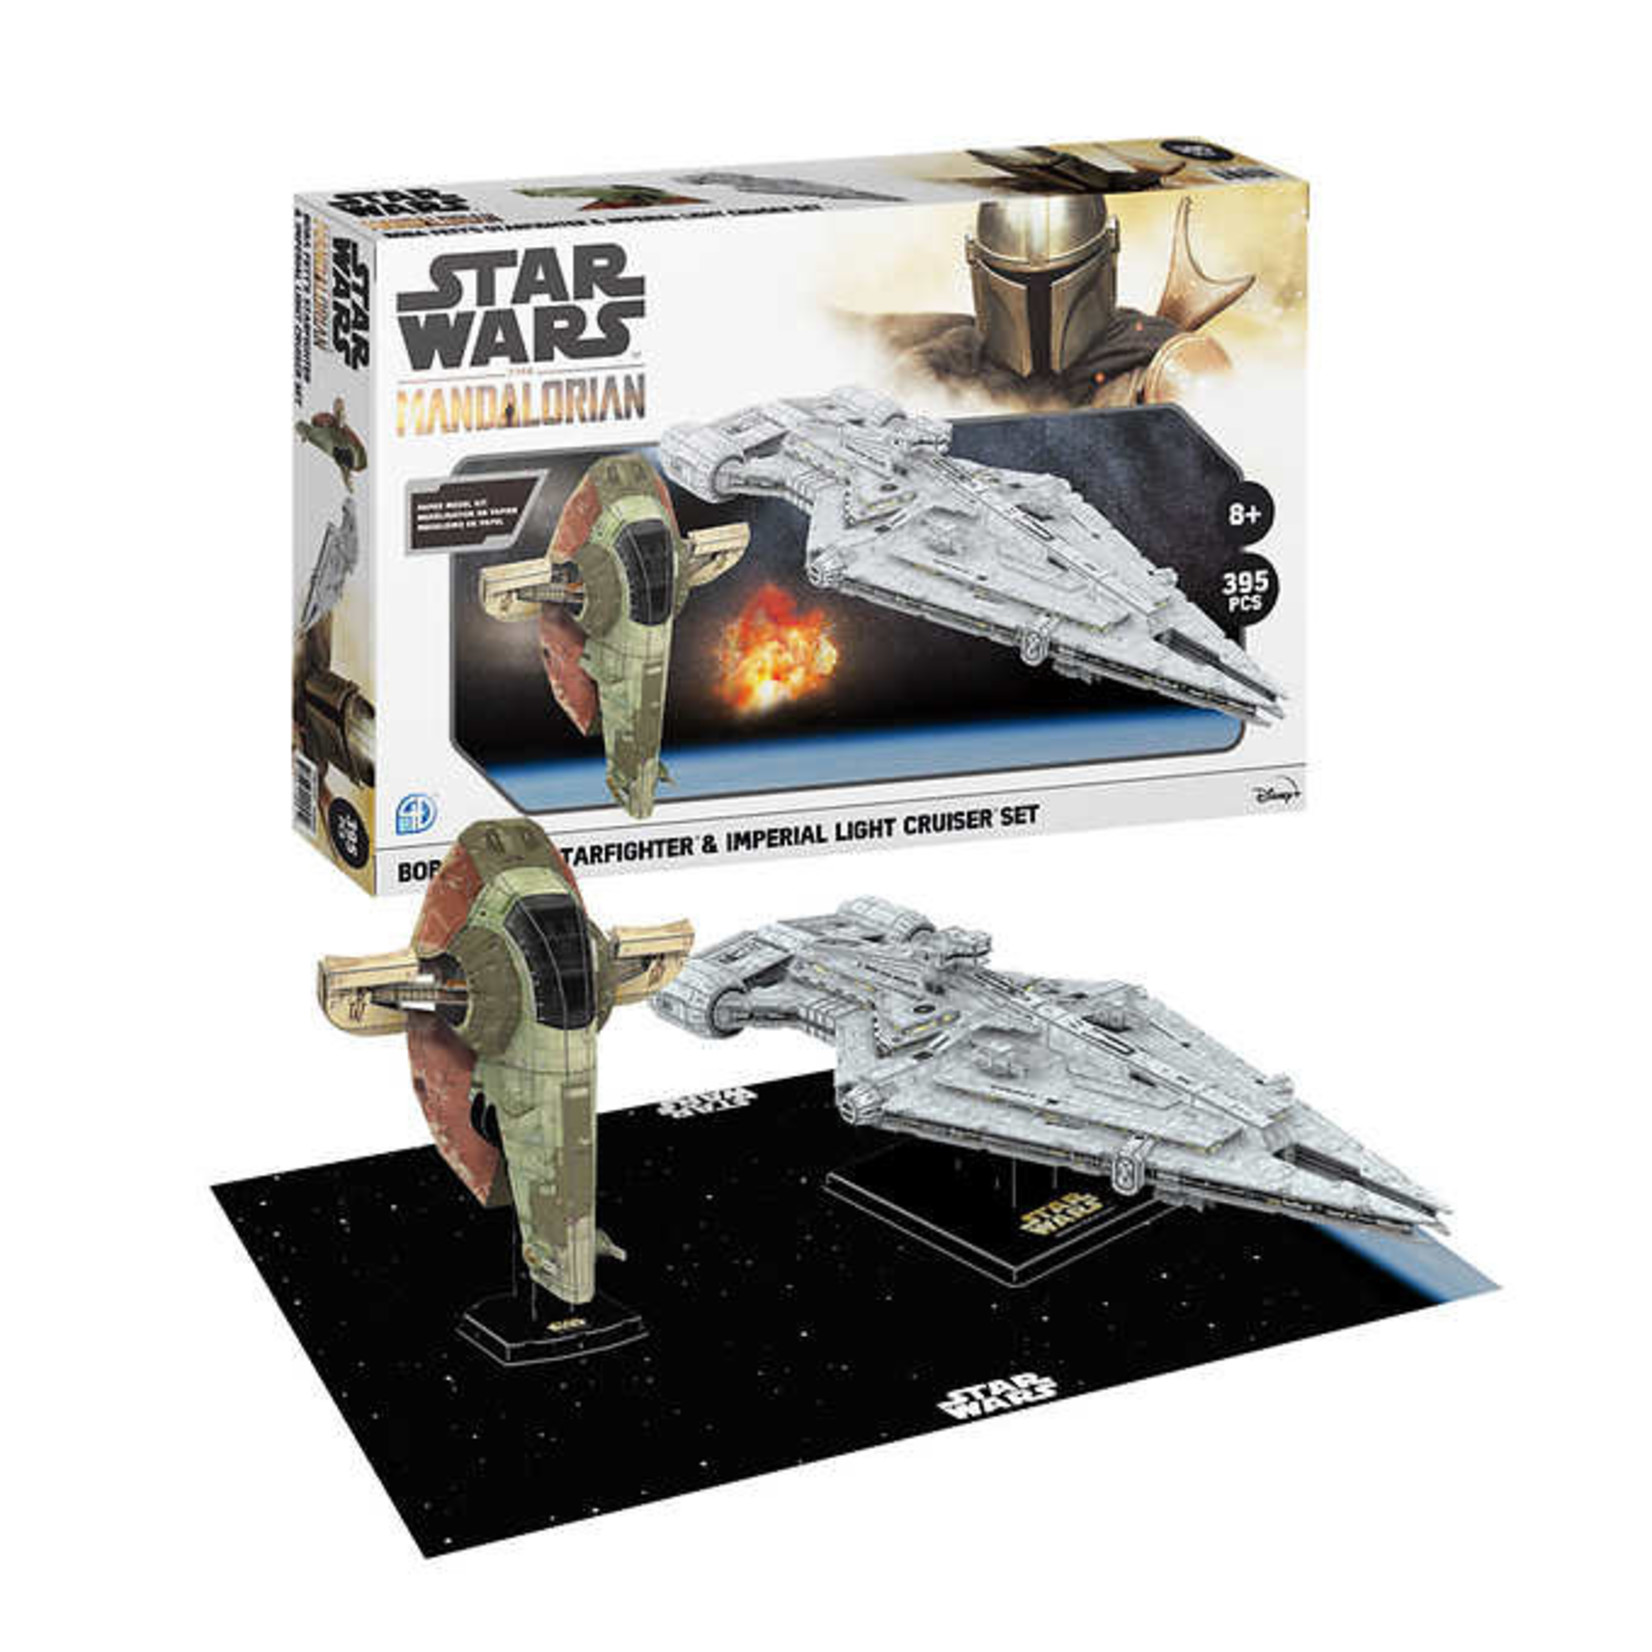 4D brand Star Wars The Mandalorian Paper Model Kit Boba Fett's starfighter & Imperial light cruiser set